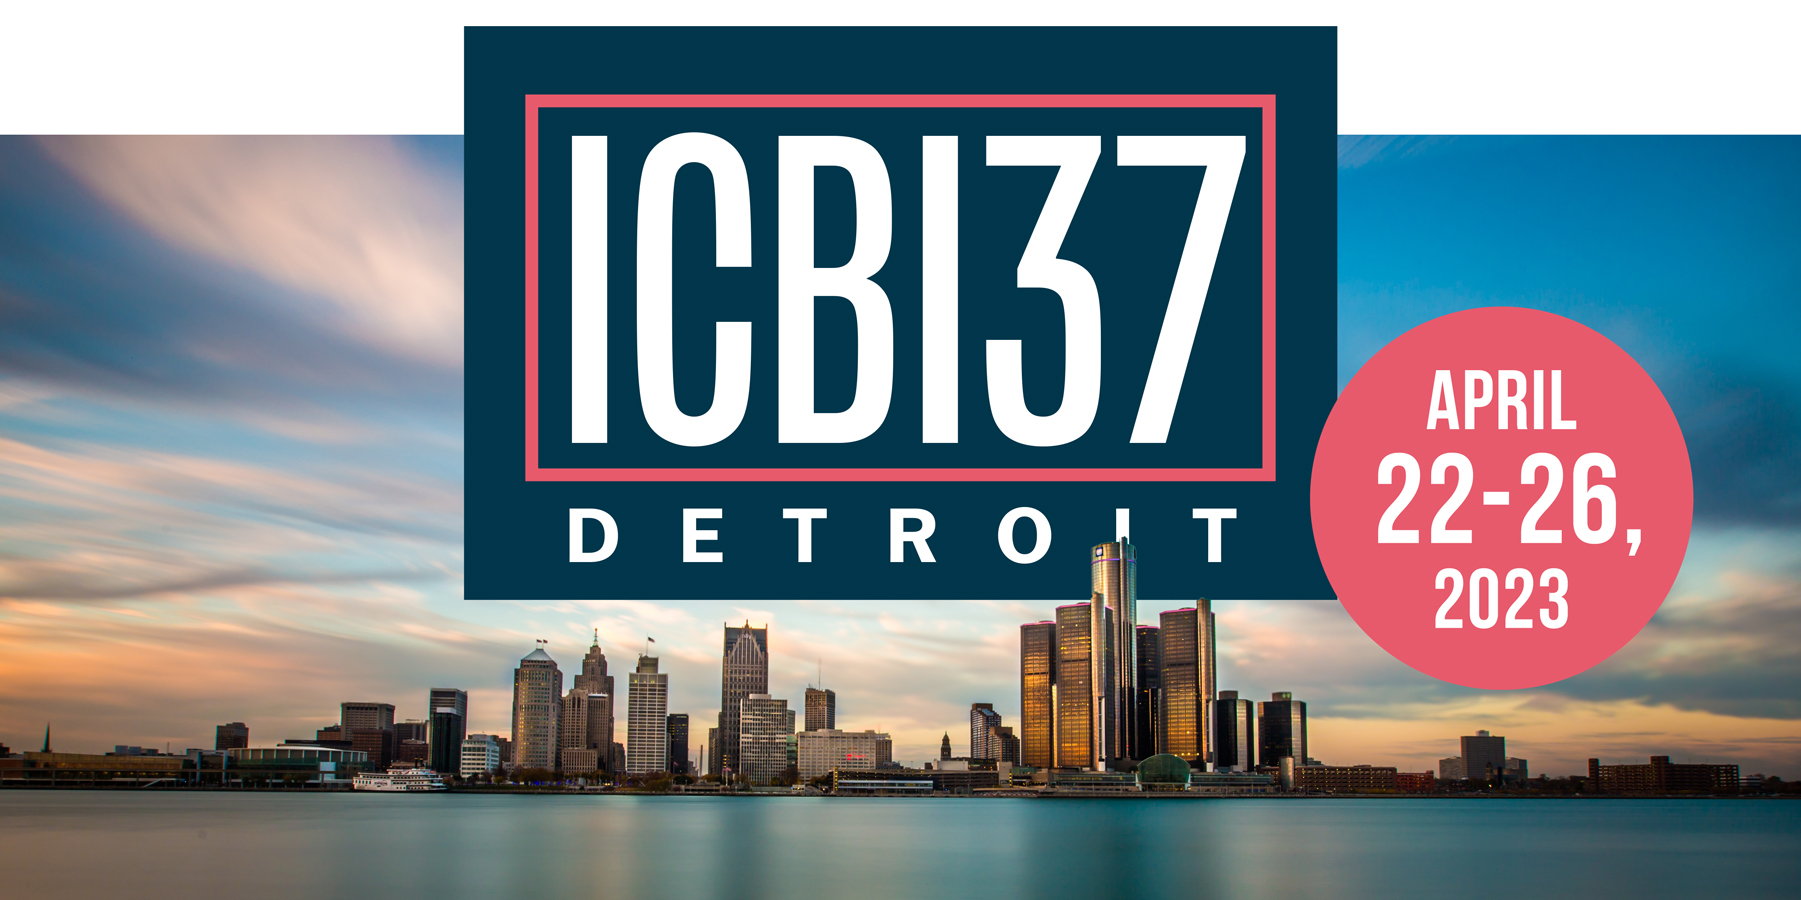 ICB137 Detroit April 2023